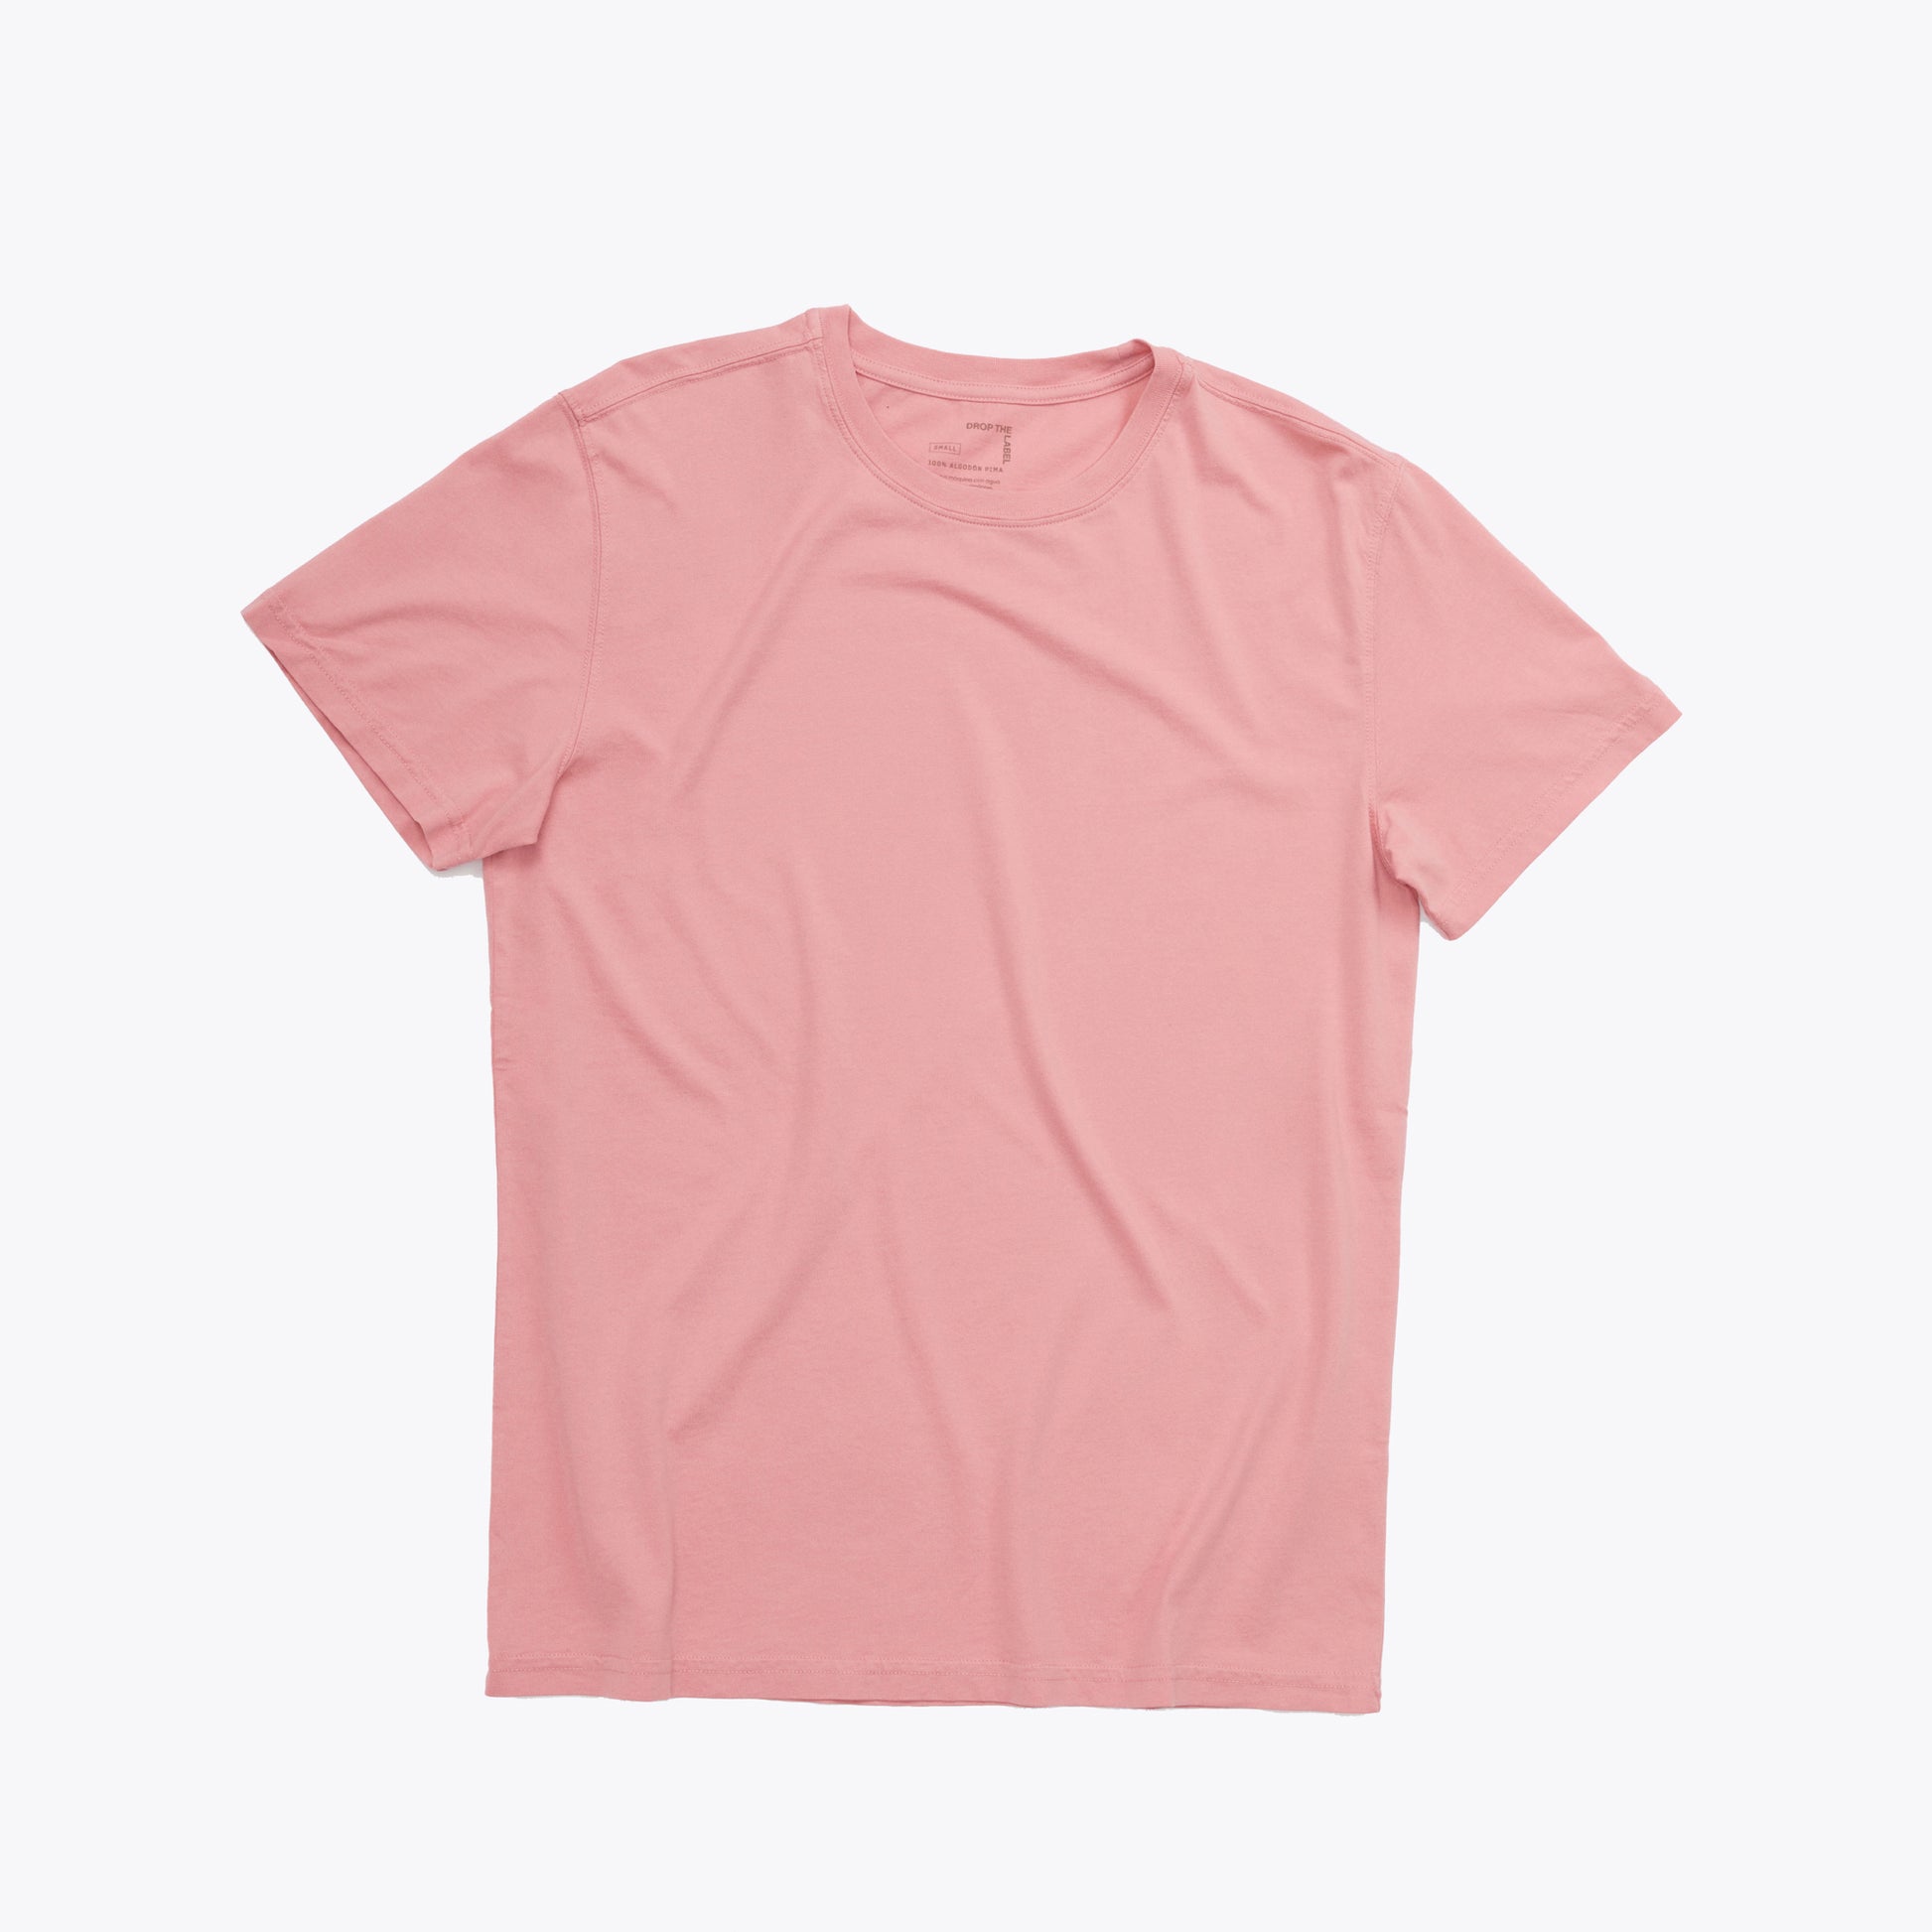 Polo rosado coral de cuello redondo y manga corta de algodón Pima, vista frontal